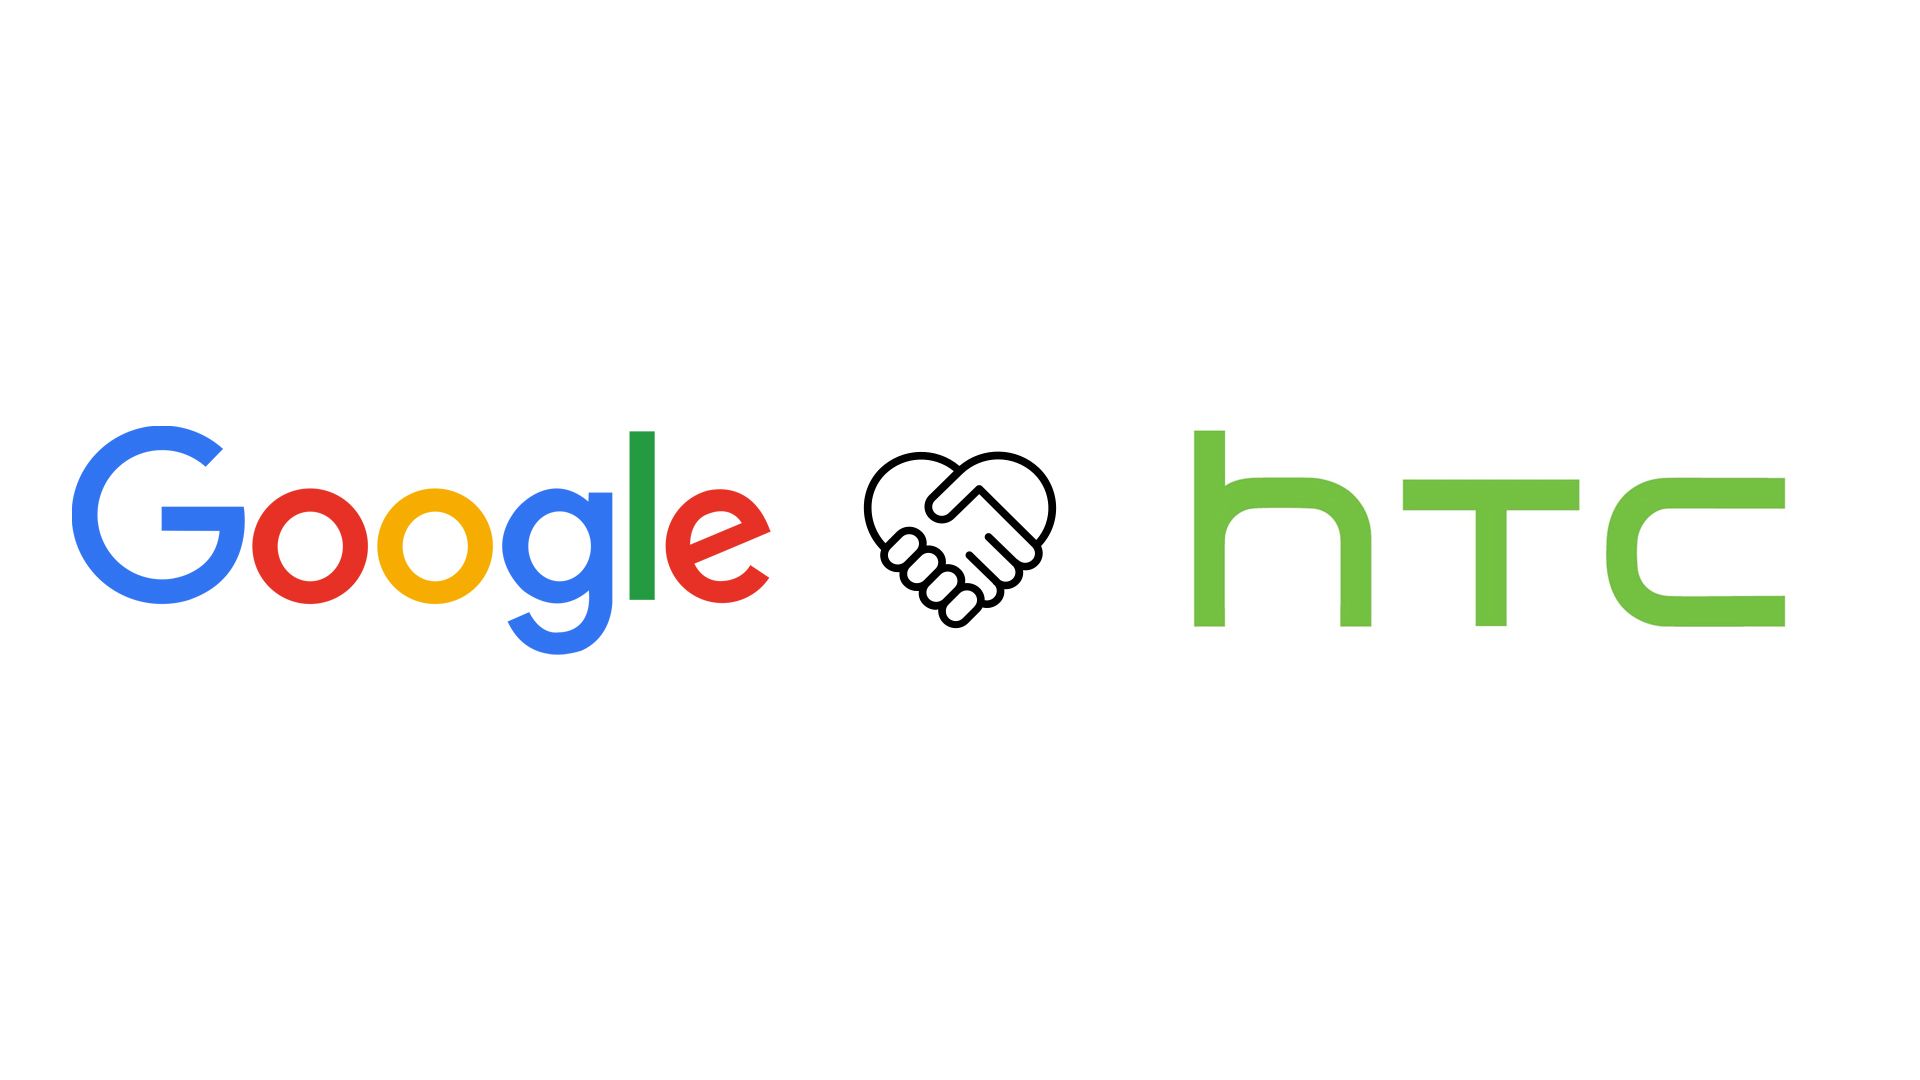 Google ปิดดีลมูลค่า 1,100 ล้านเหรียญกับ HTC พร้อมจัดงานต้อนรับทีมงานกว่า 2,000 ชีวิตที่ย้ายมา